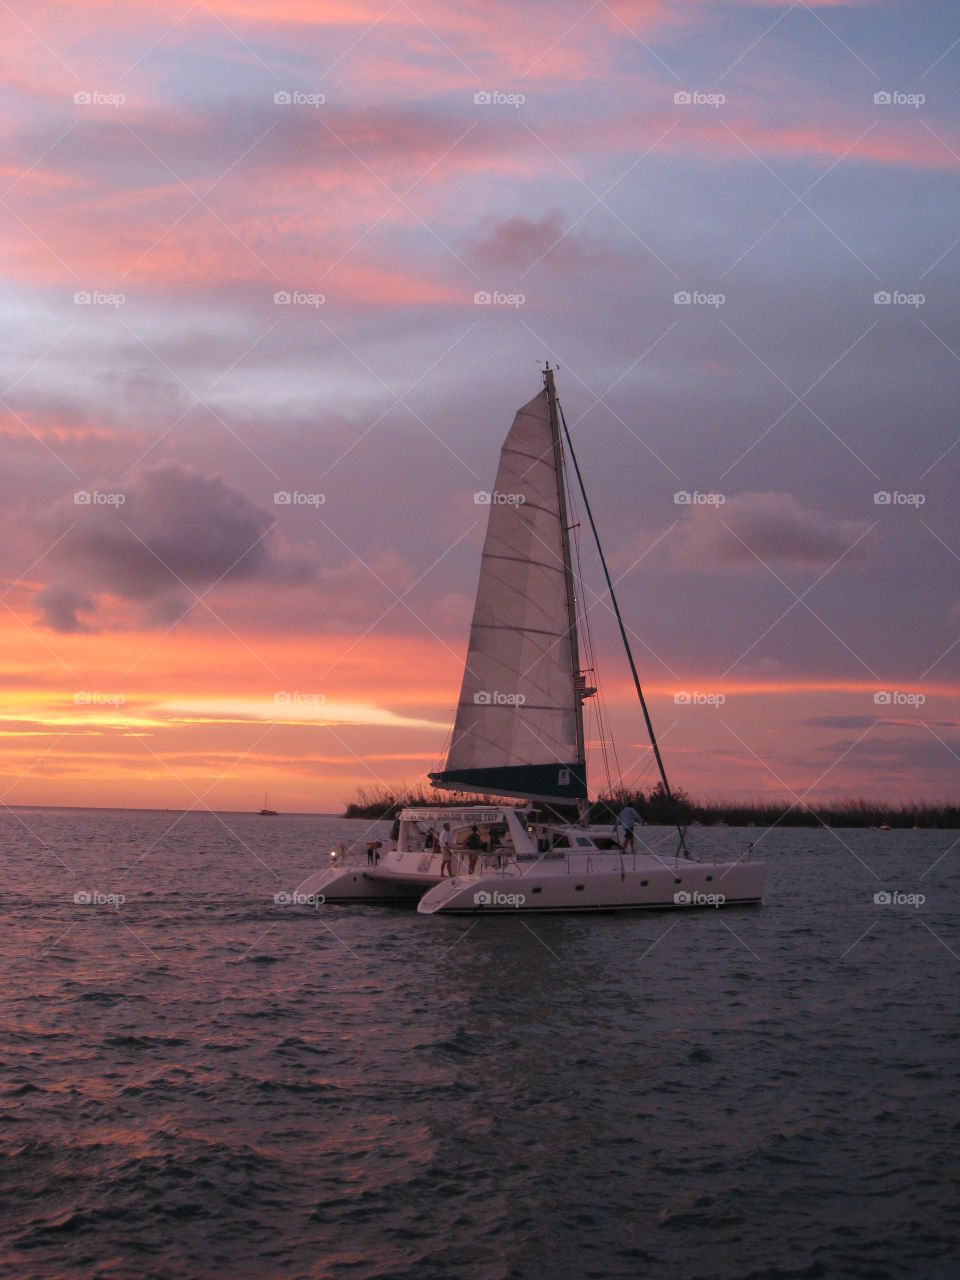 Sail away at sunset